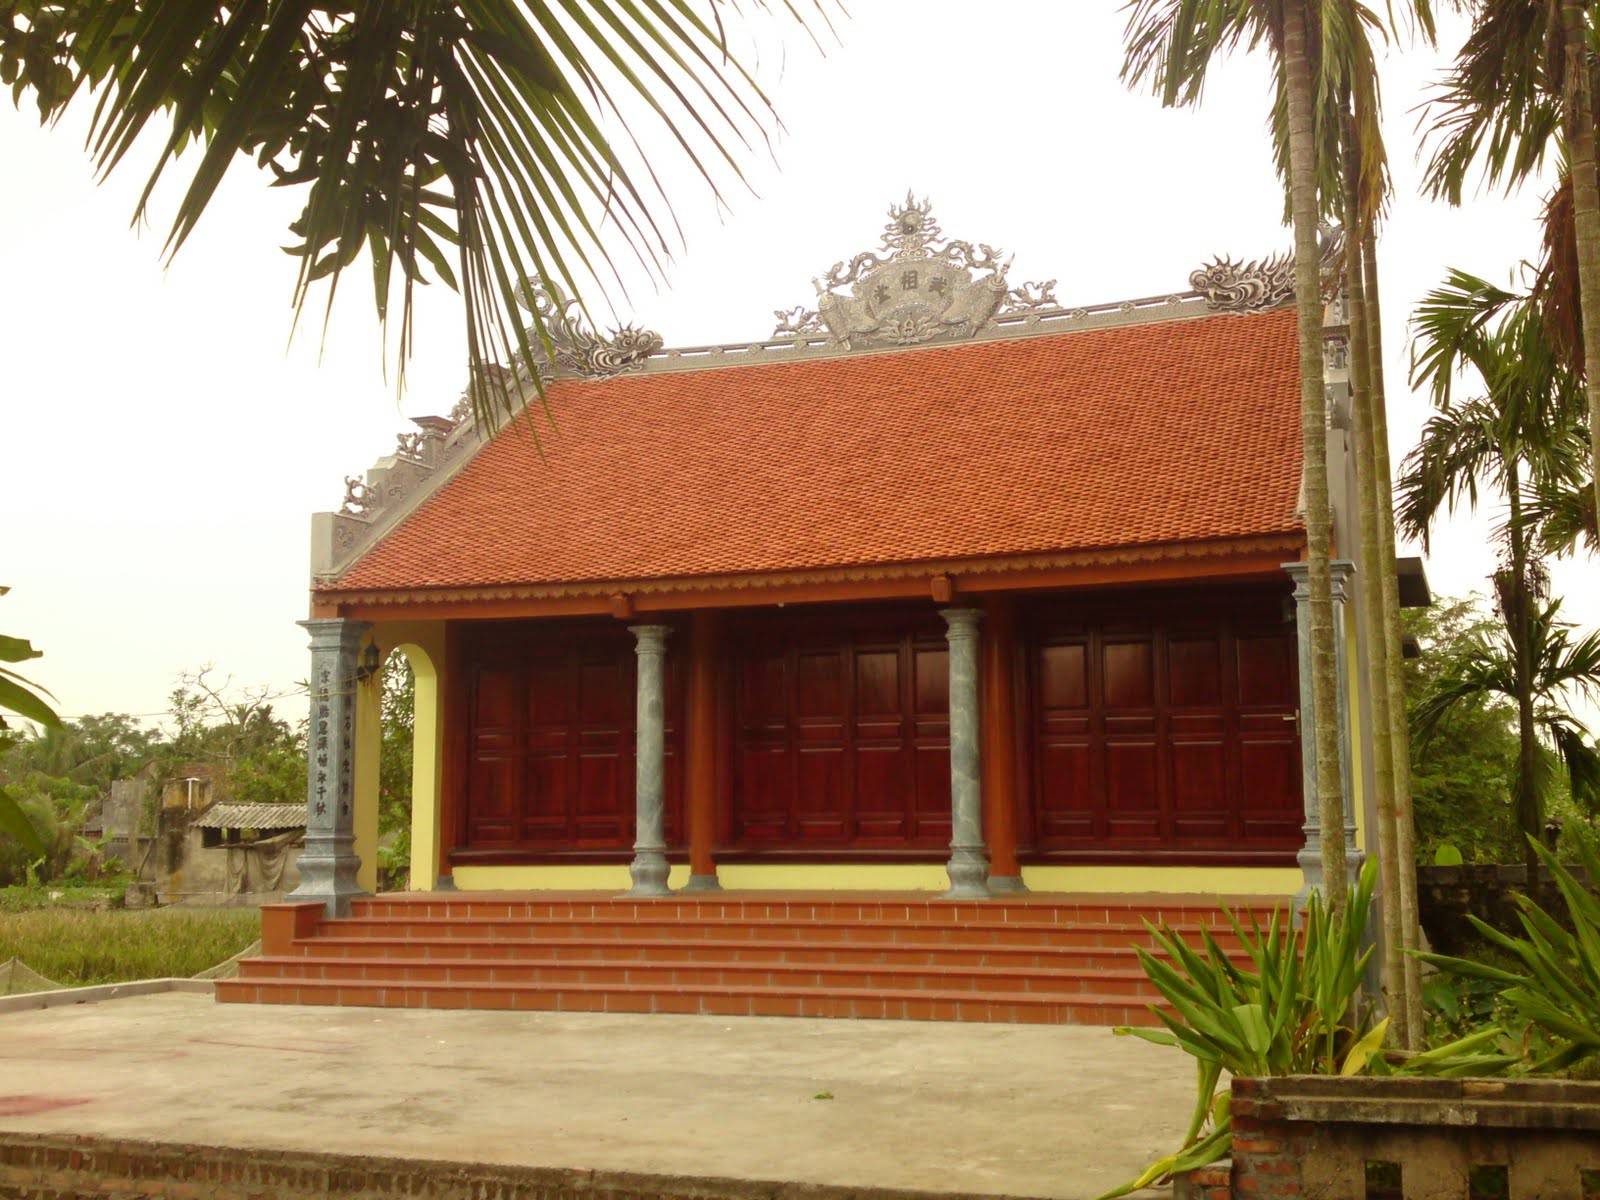 Nhà thờ họ khá phổ biến trong văn hóa tâm linh của người Việt